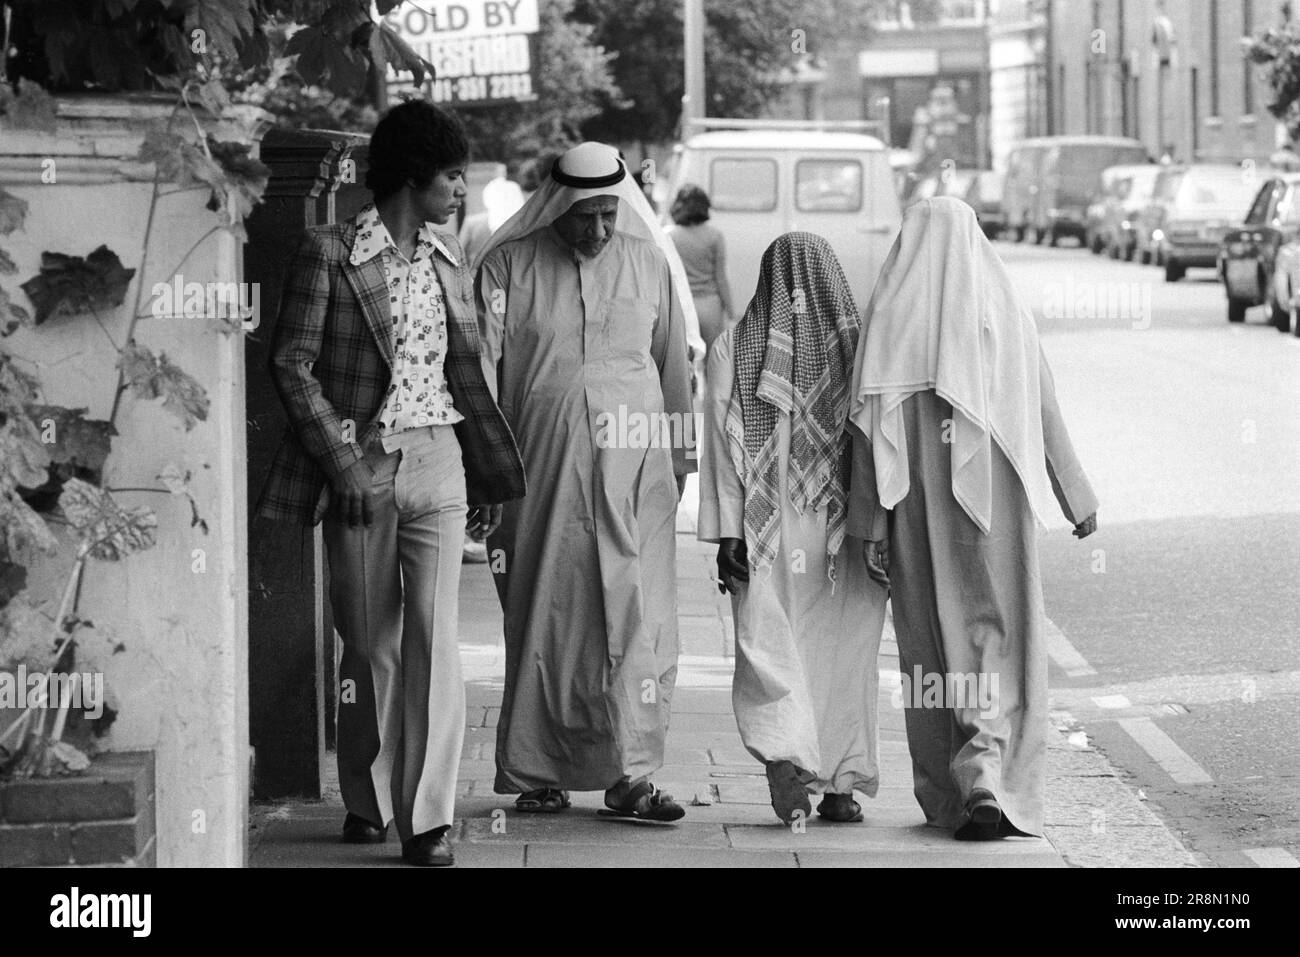 Poveri arabi uomini a piedi per strada di Earls Court Londra 1970s UK. La gente del Medio Oriente è venuta in Gran Bretagna per ricevere assistenza sanitaria sovvenzionata nelle cliniche di Harley Street. Sono stati principalmente nella zona di Earls Court. Quattro uomini, un uomo più giovane in vestito occidentale e gli altri tre uomini che indossano i tradizionali abiti bianchi chiamati un thoub, thobe, dishdasha o kandora e headdress arabo tradizionale chiamato il kaffiyeh o ghutra. Earls Court, Londra, Inghilterra circa 1977 70s Regno Unito HOMER SYKES Foto Stock